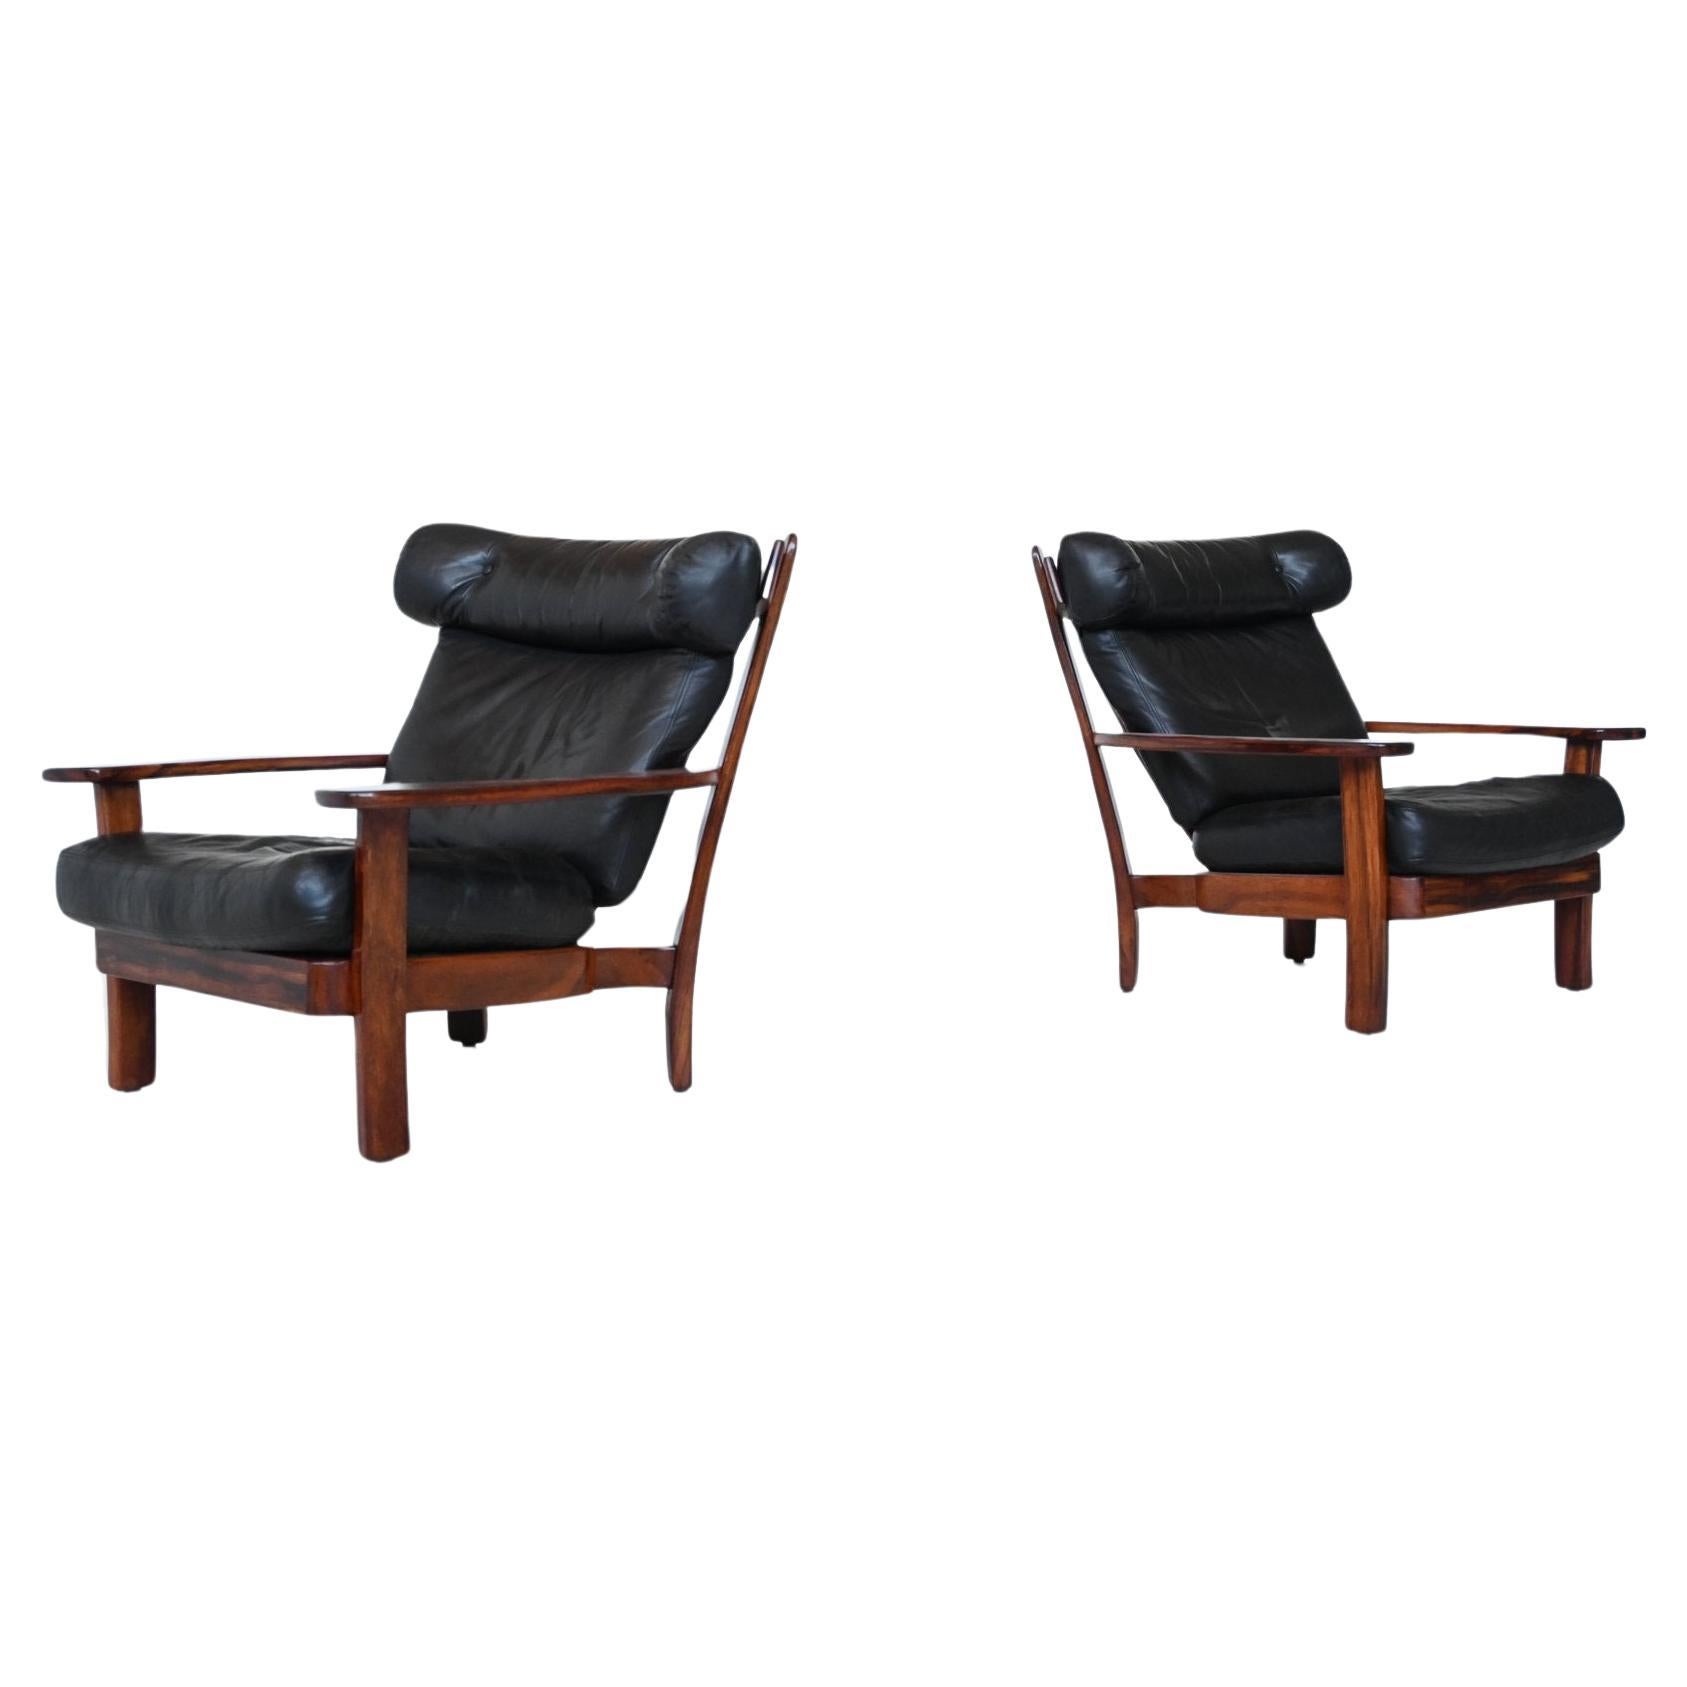 Schön geformtes Paar brasilianischer Sessel im Stil von Sergio Rodrigues, Brasilien 1960. Diese gut verarbeiteten Stühle sehen von allen Seiten toll aus und sitzen auch sehr bequem. Der Rahmen ist aus schwerem massivem Jacaranda-Palisanderholz